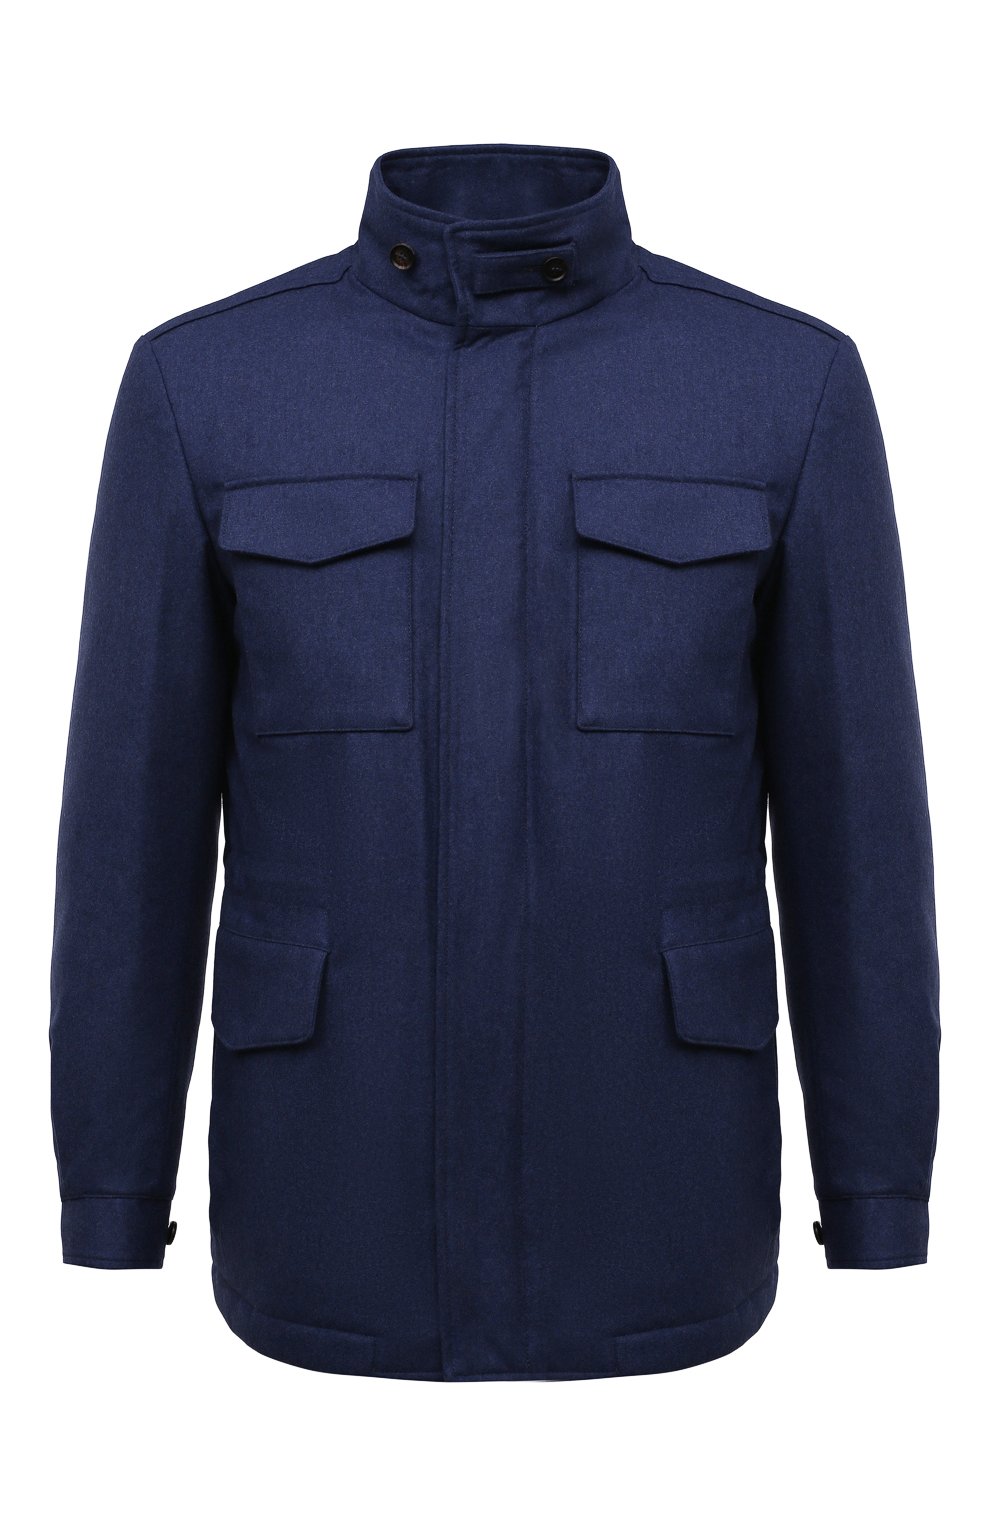 Мужская шерстяная куртка WATERVILLE синего цвета, арт. TRAVEL/662 | Фото 1 (Кросс-КТ: Куртка; Мужское Кросс-КТ: шерсть и кашемир, утепленные куртки; Материал внешний: Шерсть; Рукава: Длинные; Материал подклада: Синтетический материал; Длина (верхняя одежда): Короткие; Стили: Кэжуэл)